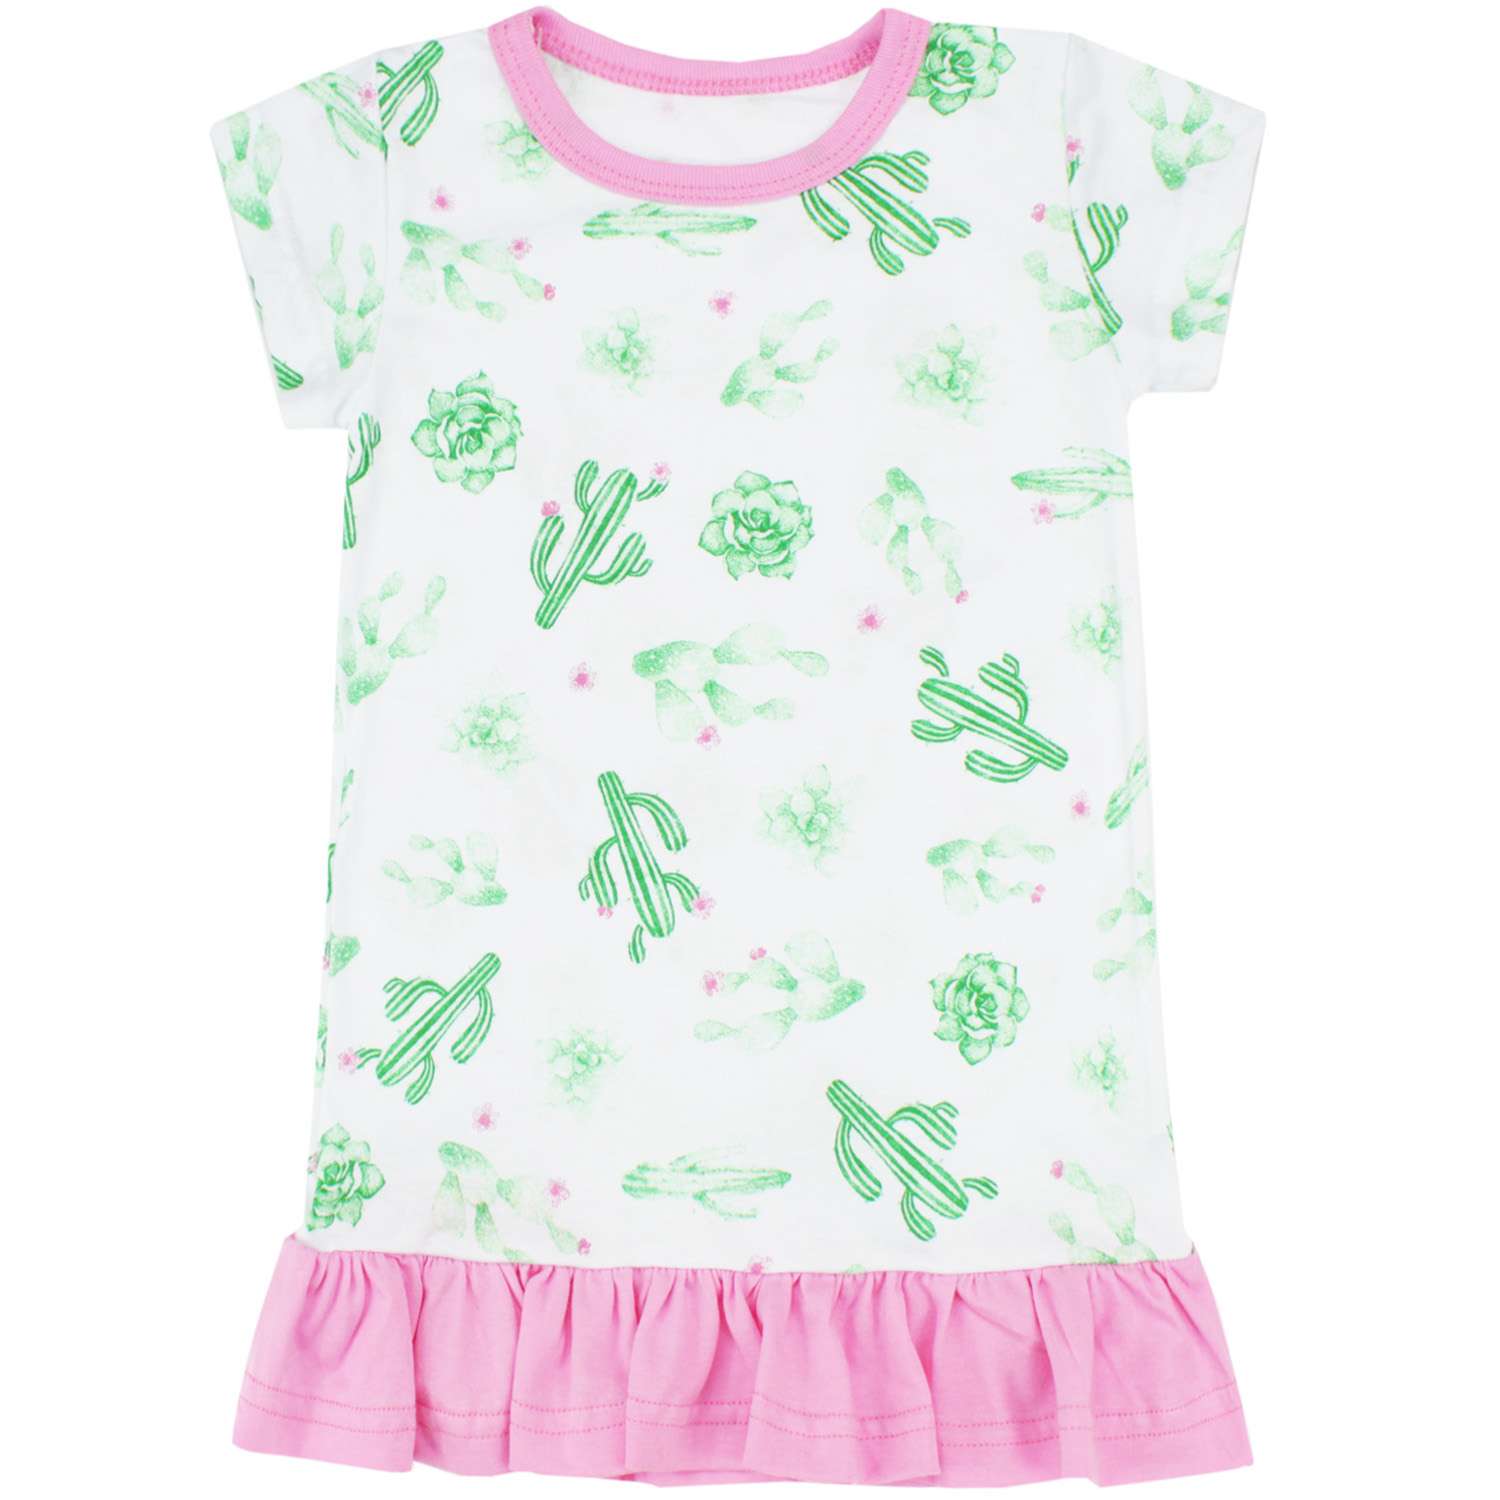 Платье Babycollection 00-00025437белый розовый зеленый - фото 2